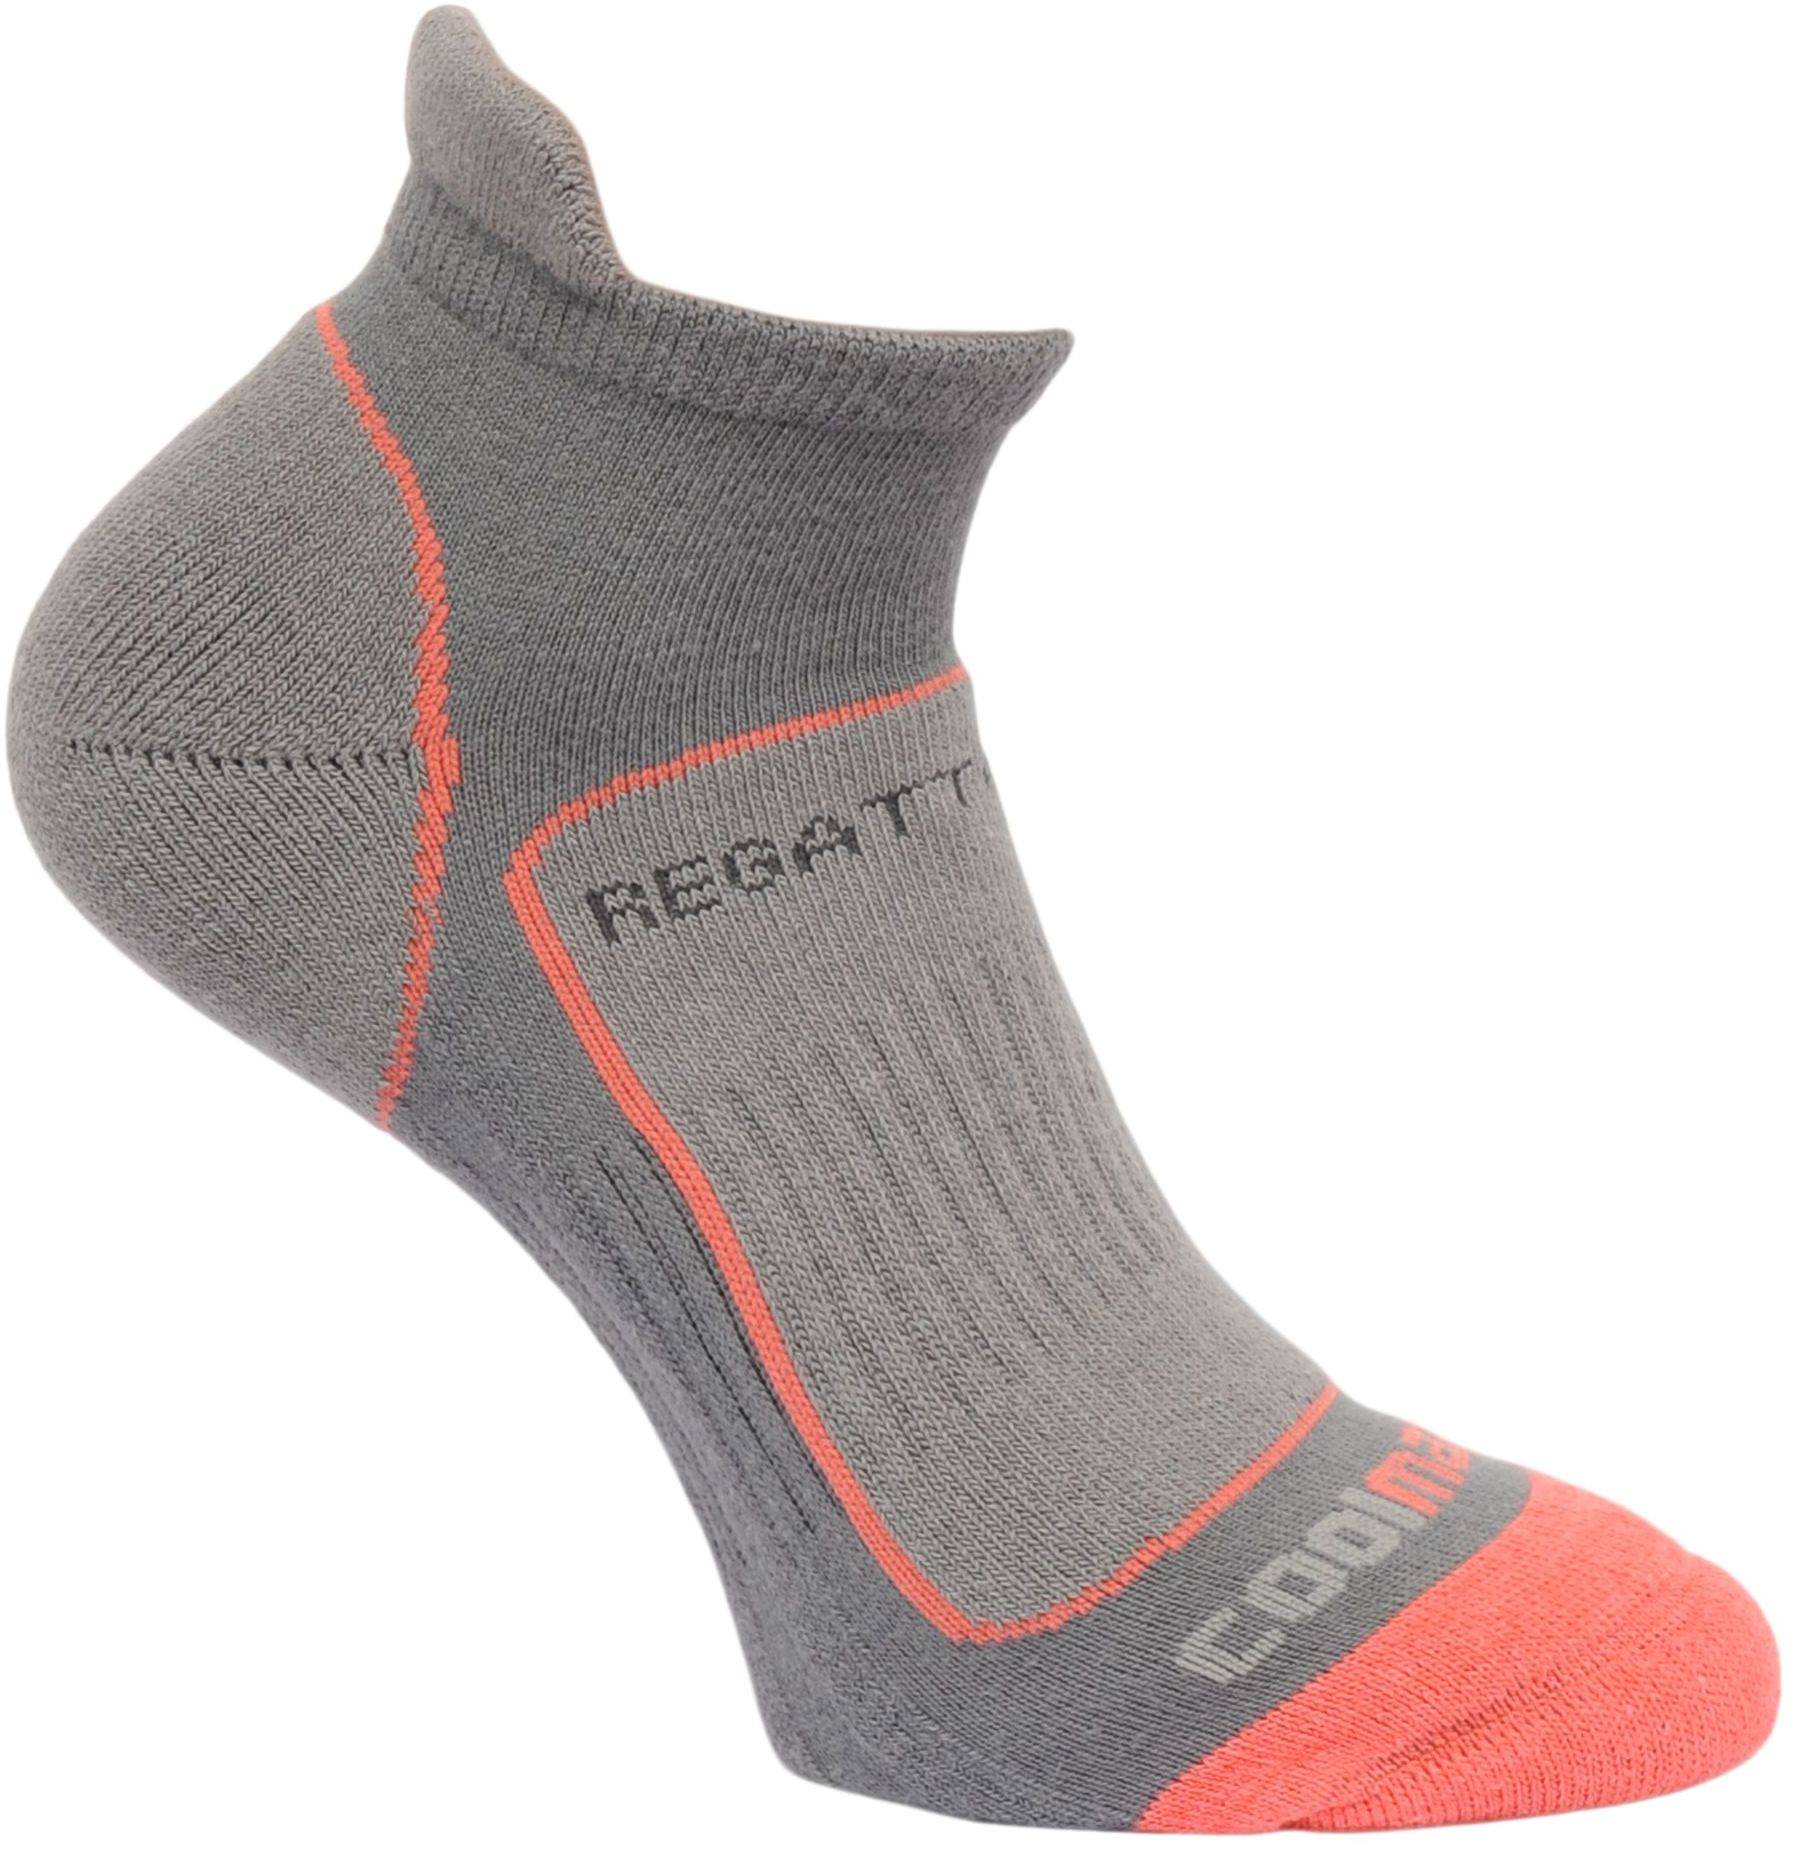 Regatta Wmns Trail Runner Socks Steel/Coral Size 3-5